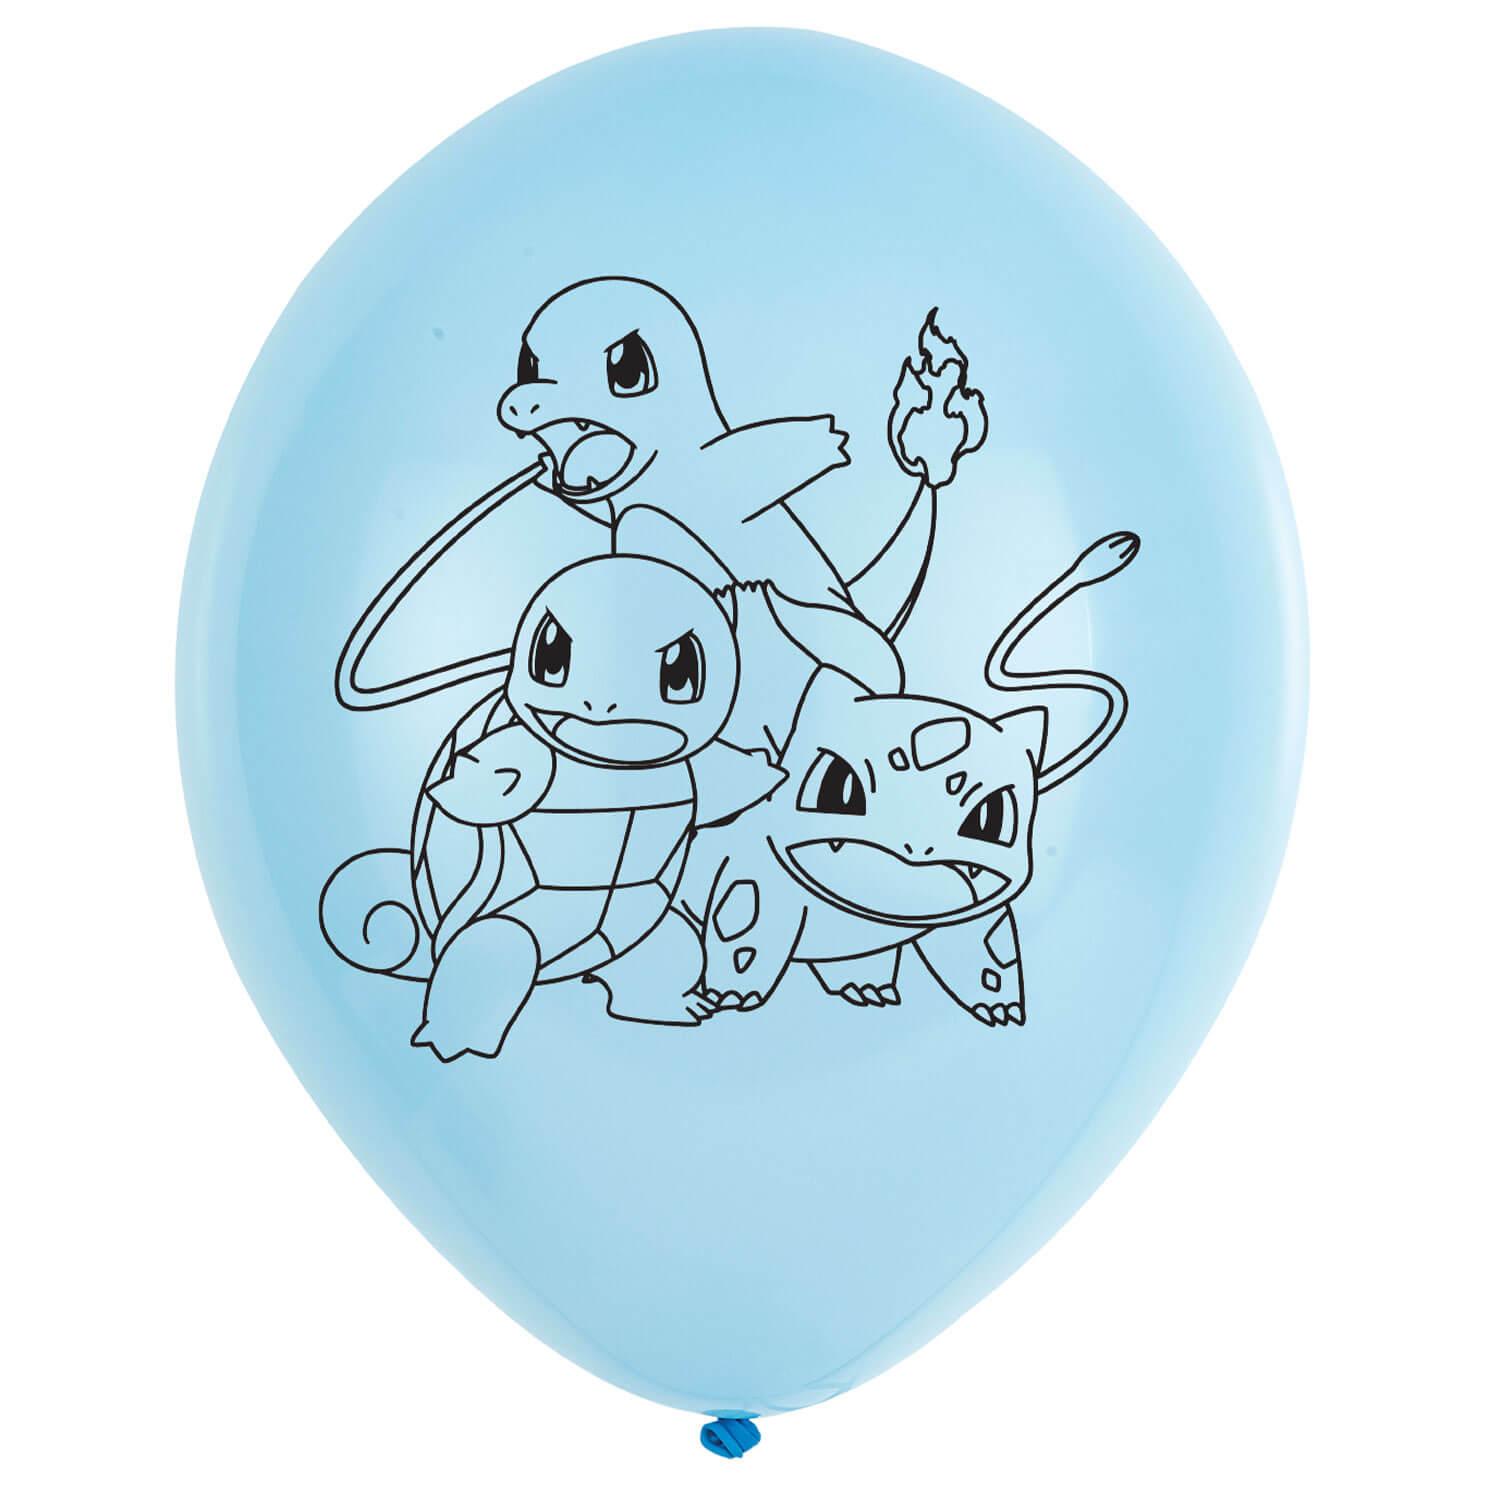 Ballons Pokemon™ x6 - bleu et jaune - Ballons - Rue de la Fête